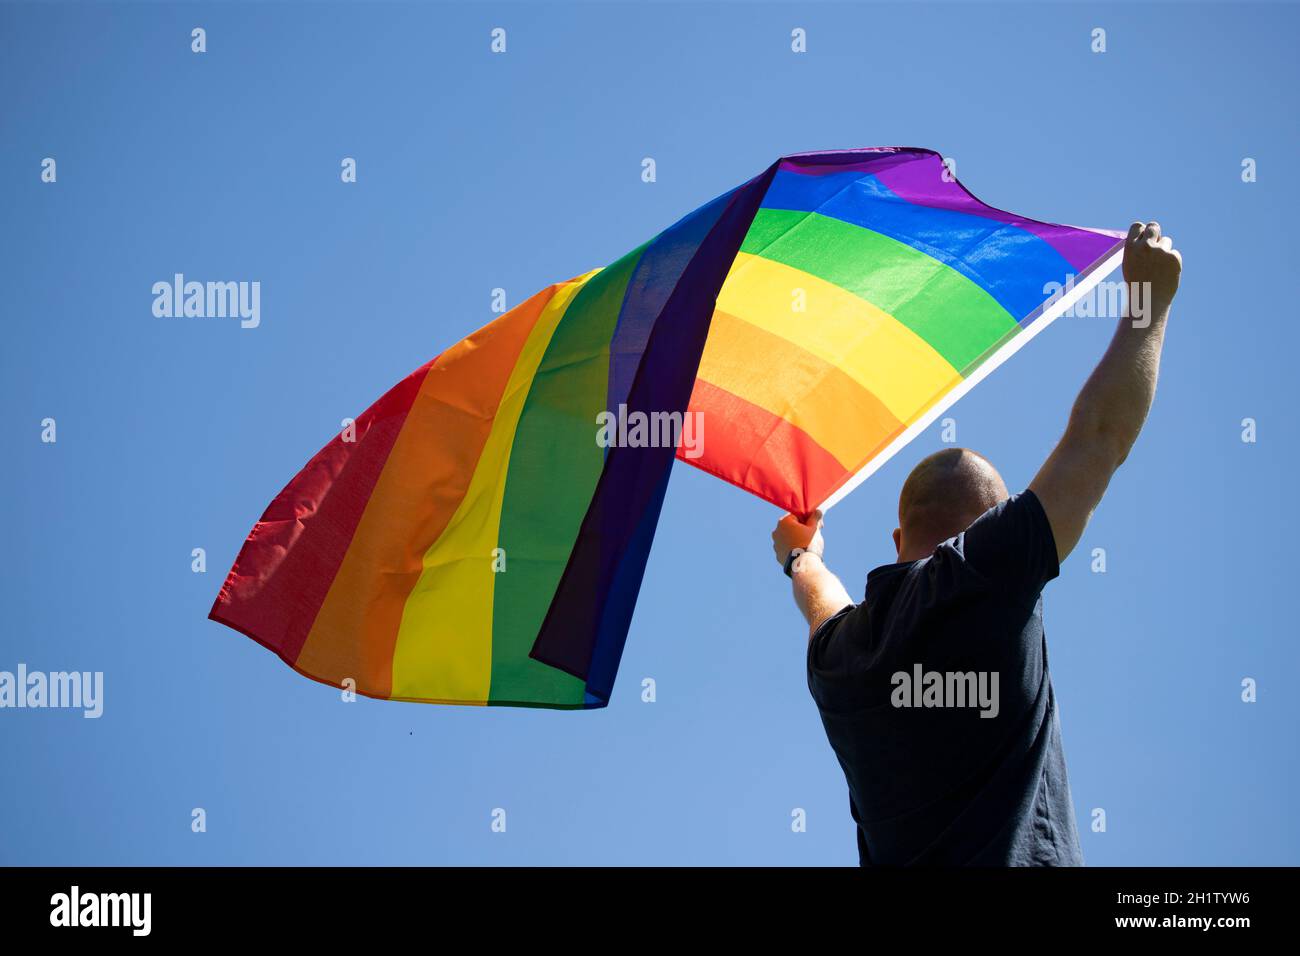 Homme tenant un drapeau arc-en-ciel gay sur bleu ciel d'été. Symbole bisexuel, gay, lesbien, transsexuel. Concept de bonheur, de liberté et d'amour pour le même sexe coupé Banque D'Images